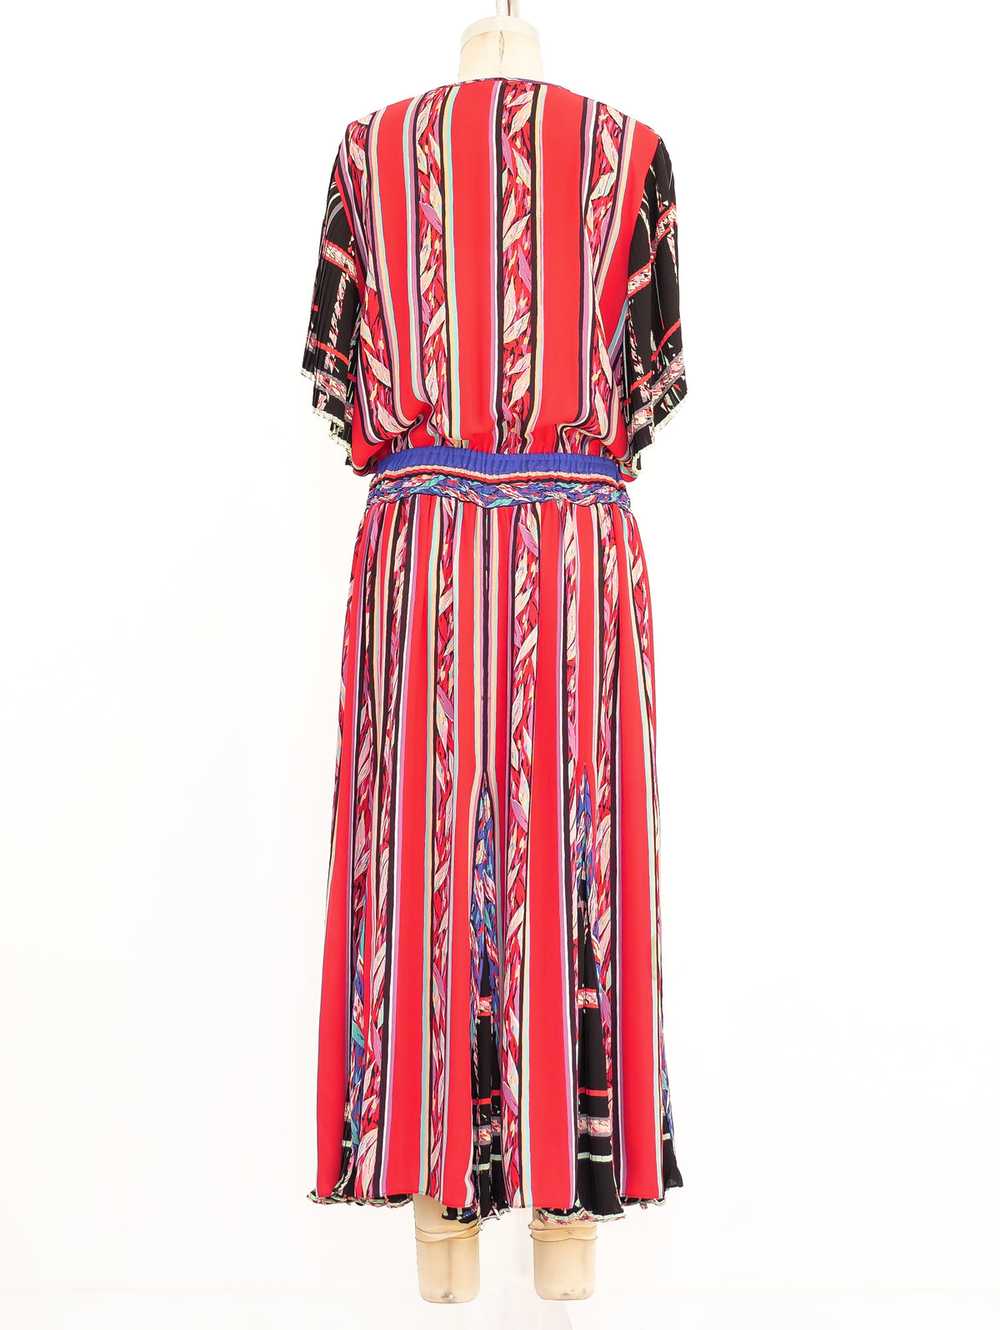 Diane Freis Mixed Print Midi Dress - image 4